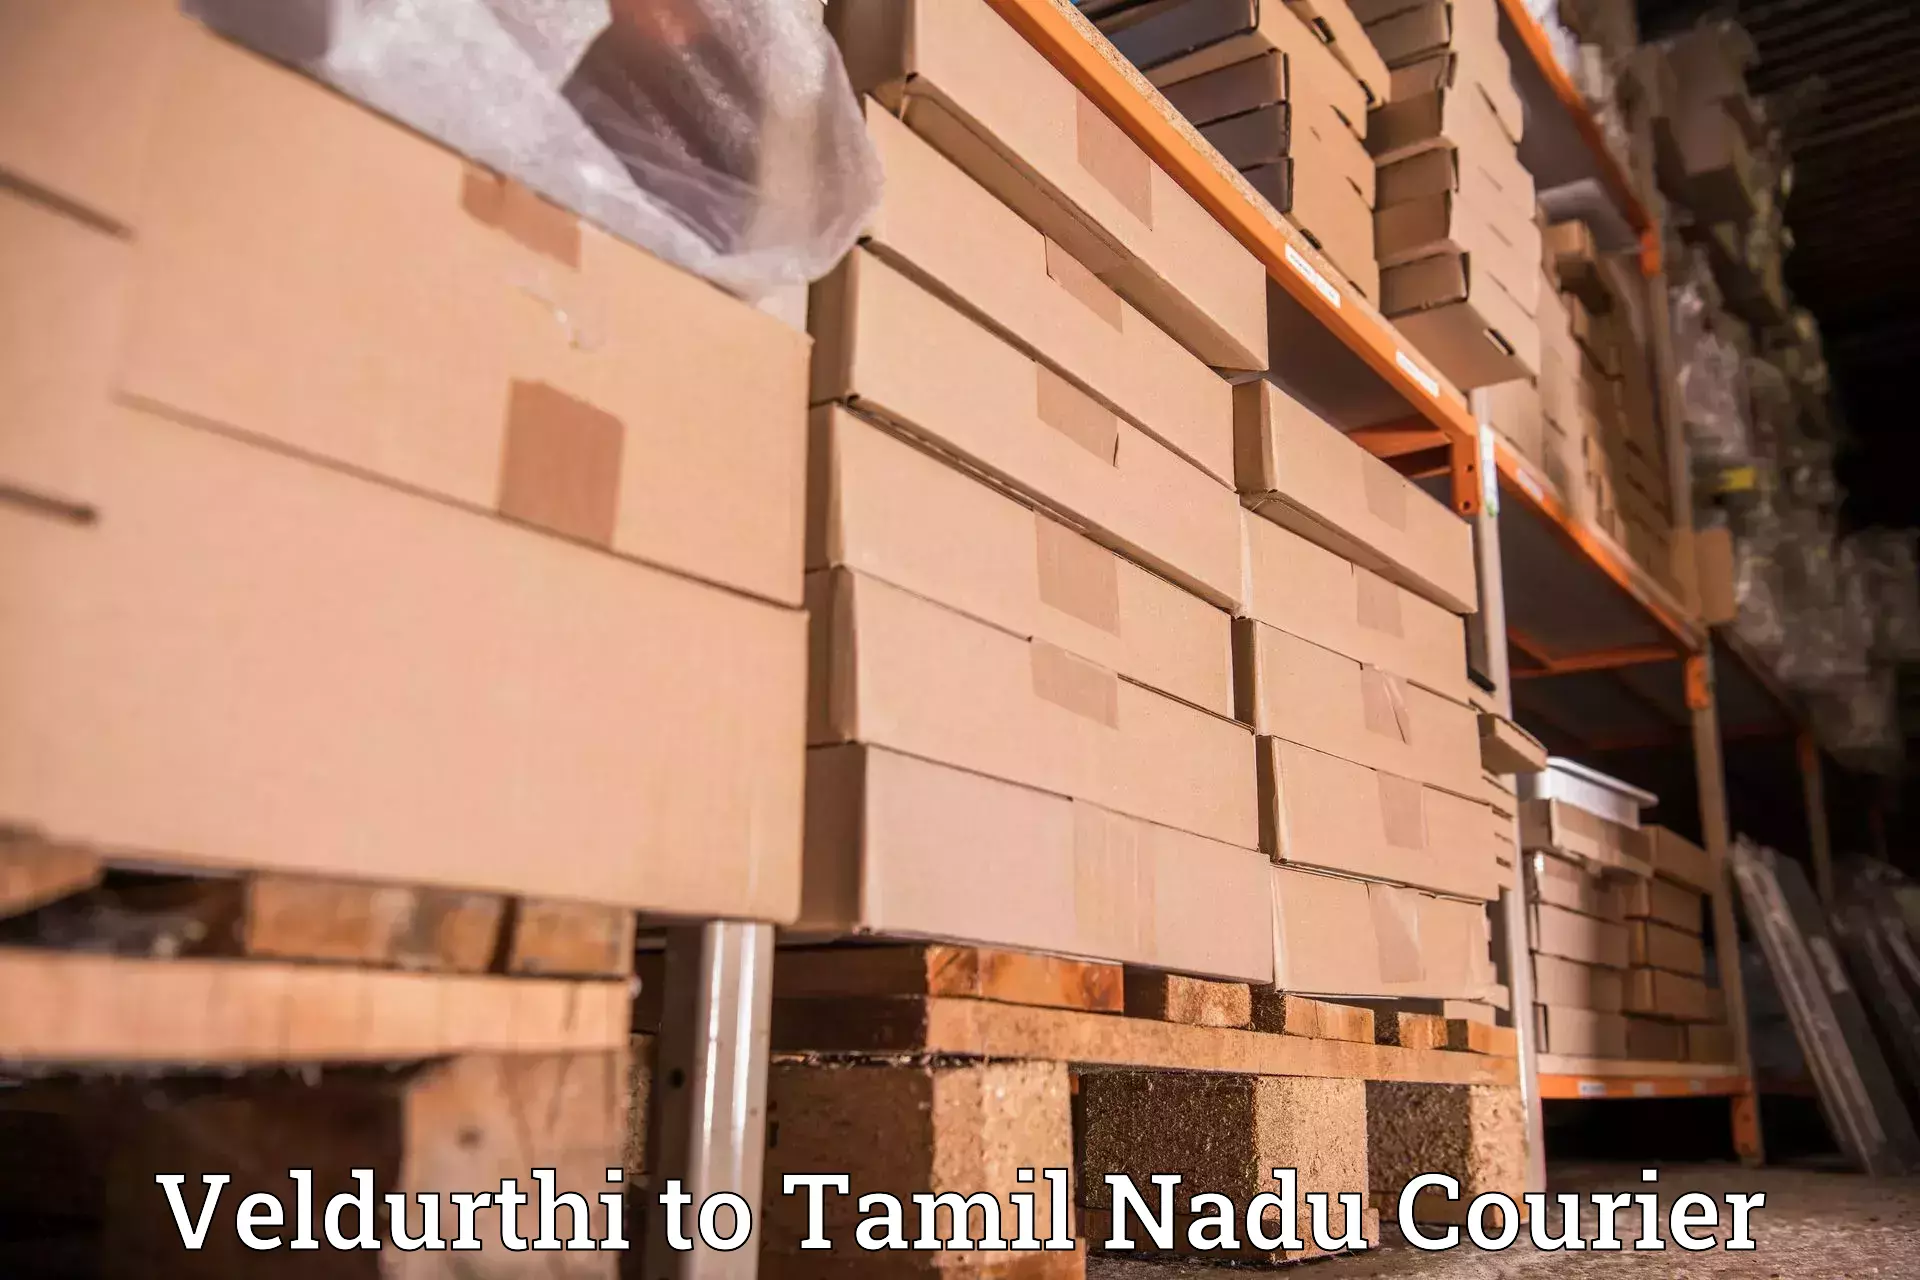 Small business couriers Veldurthi to Tiruturaipundi